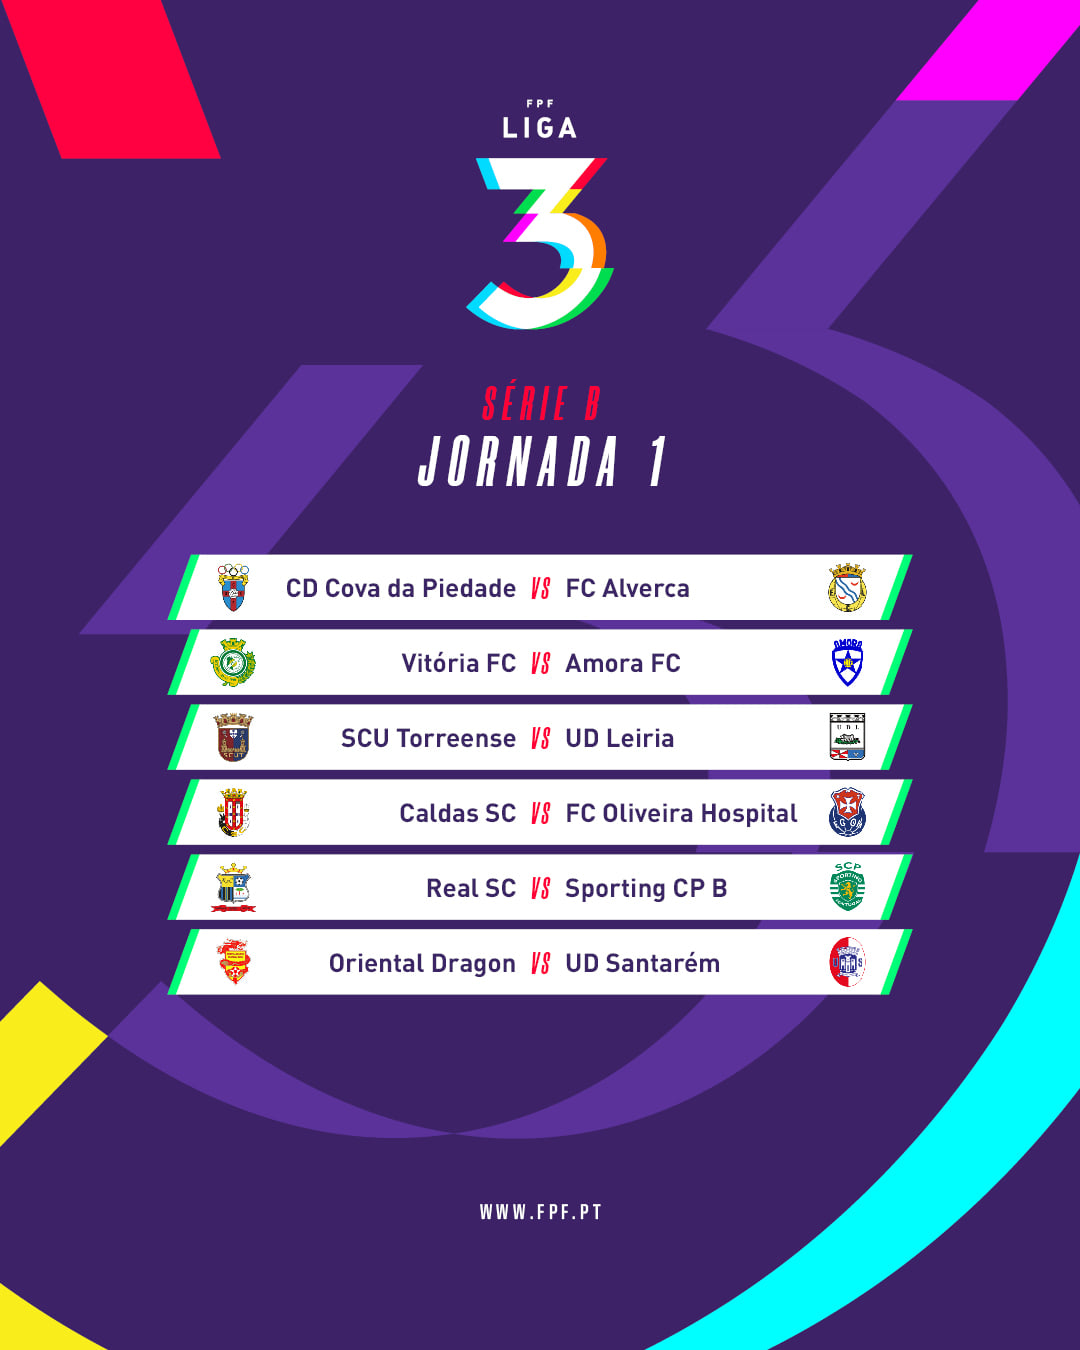 Fases de acesso à II Liga e Liga 3 sorteadas amanhã - Campeonato de Portugal  Seniores - SAPO Desporto